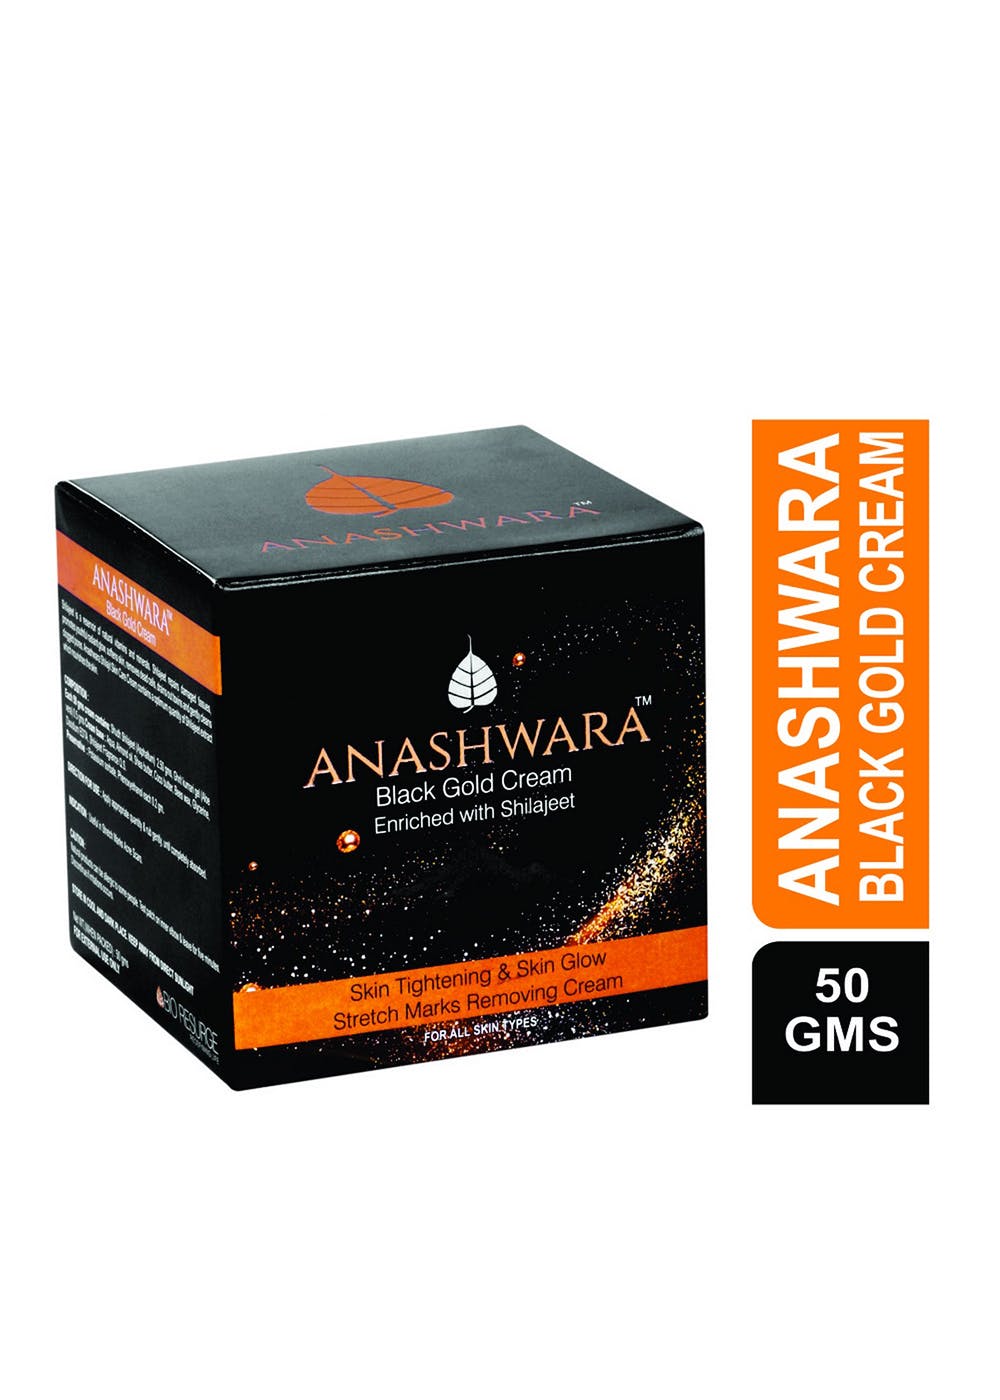 Anashwara Black Gold Cream